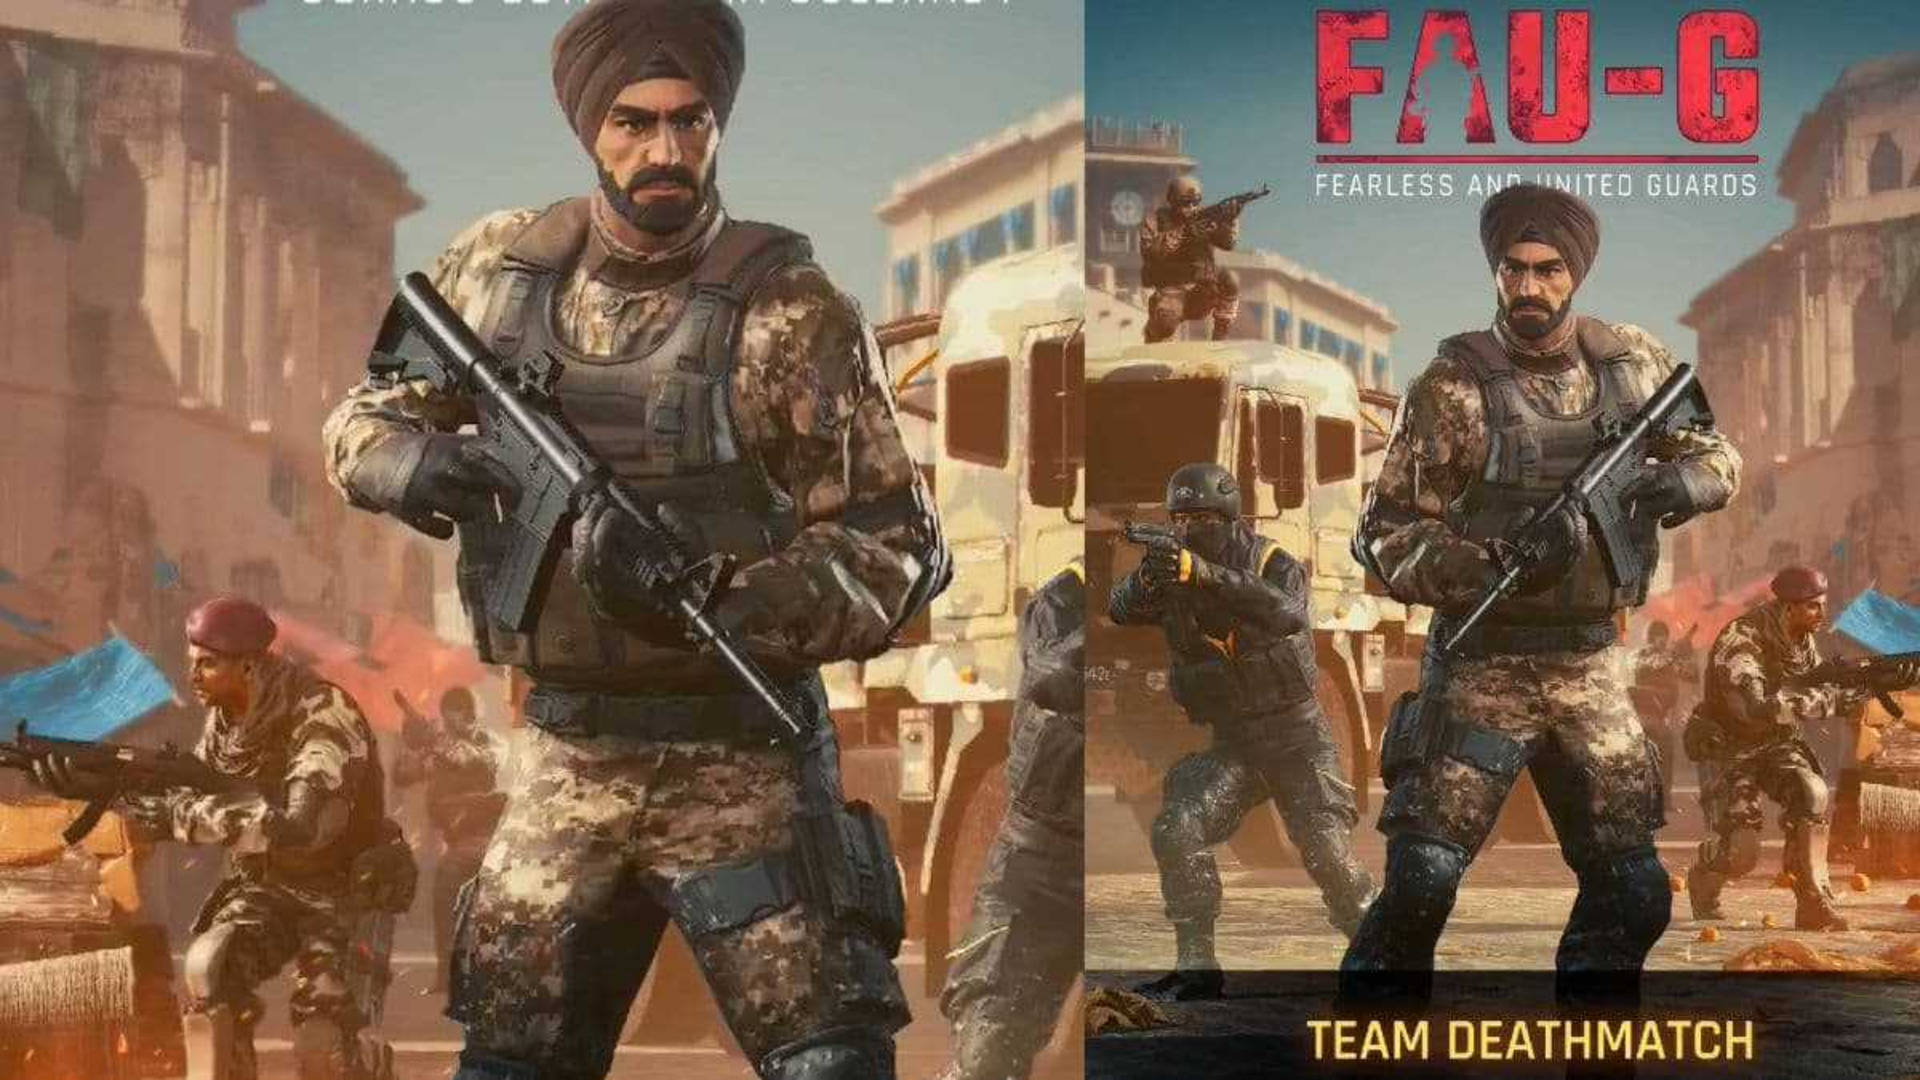 Team Deathmatch Fau-g Wallpaper